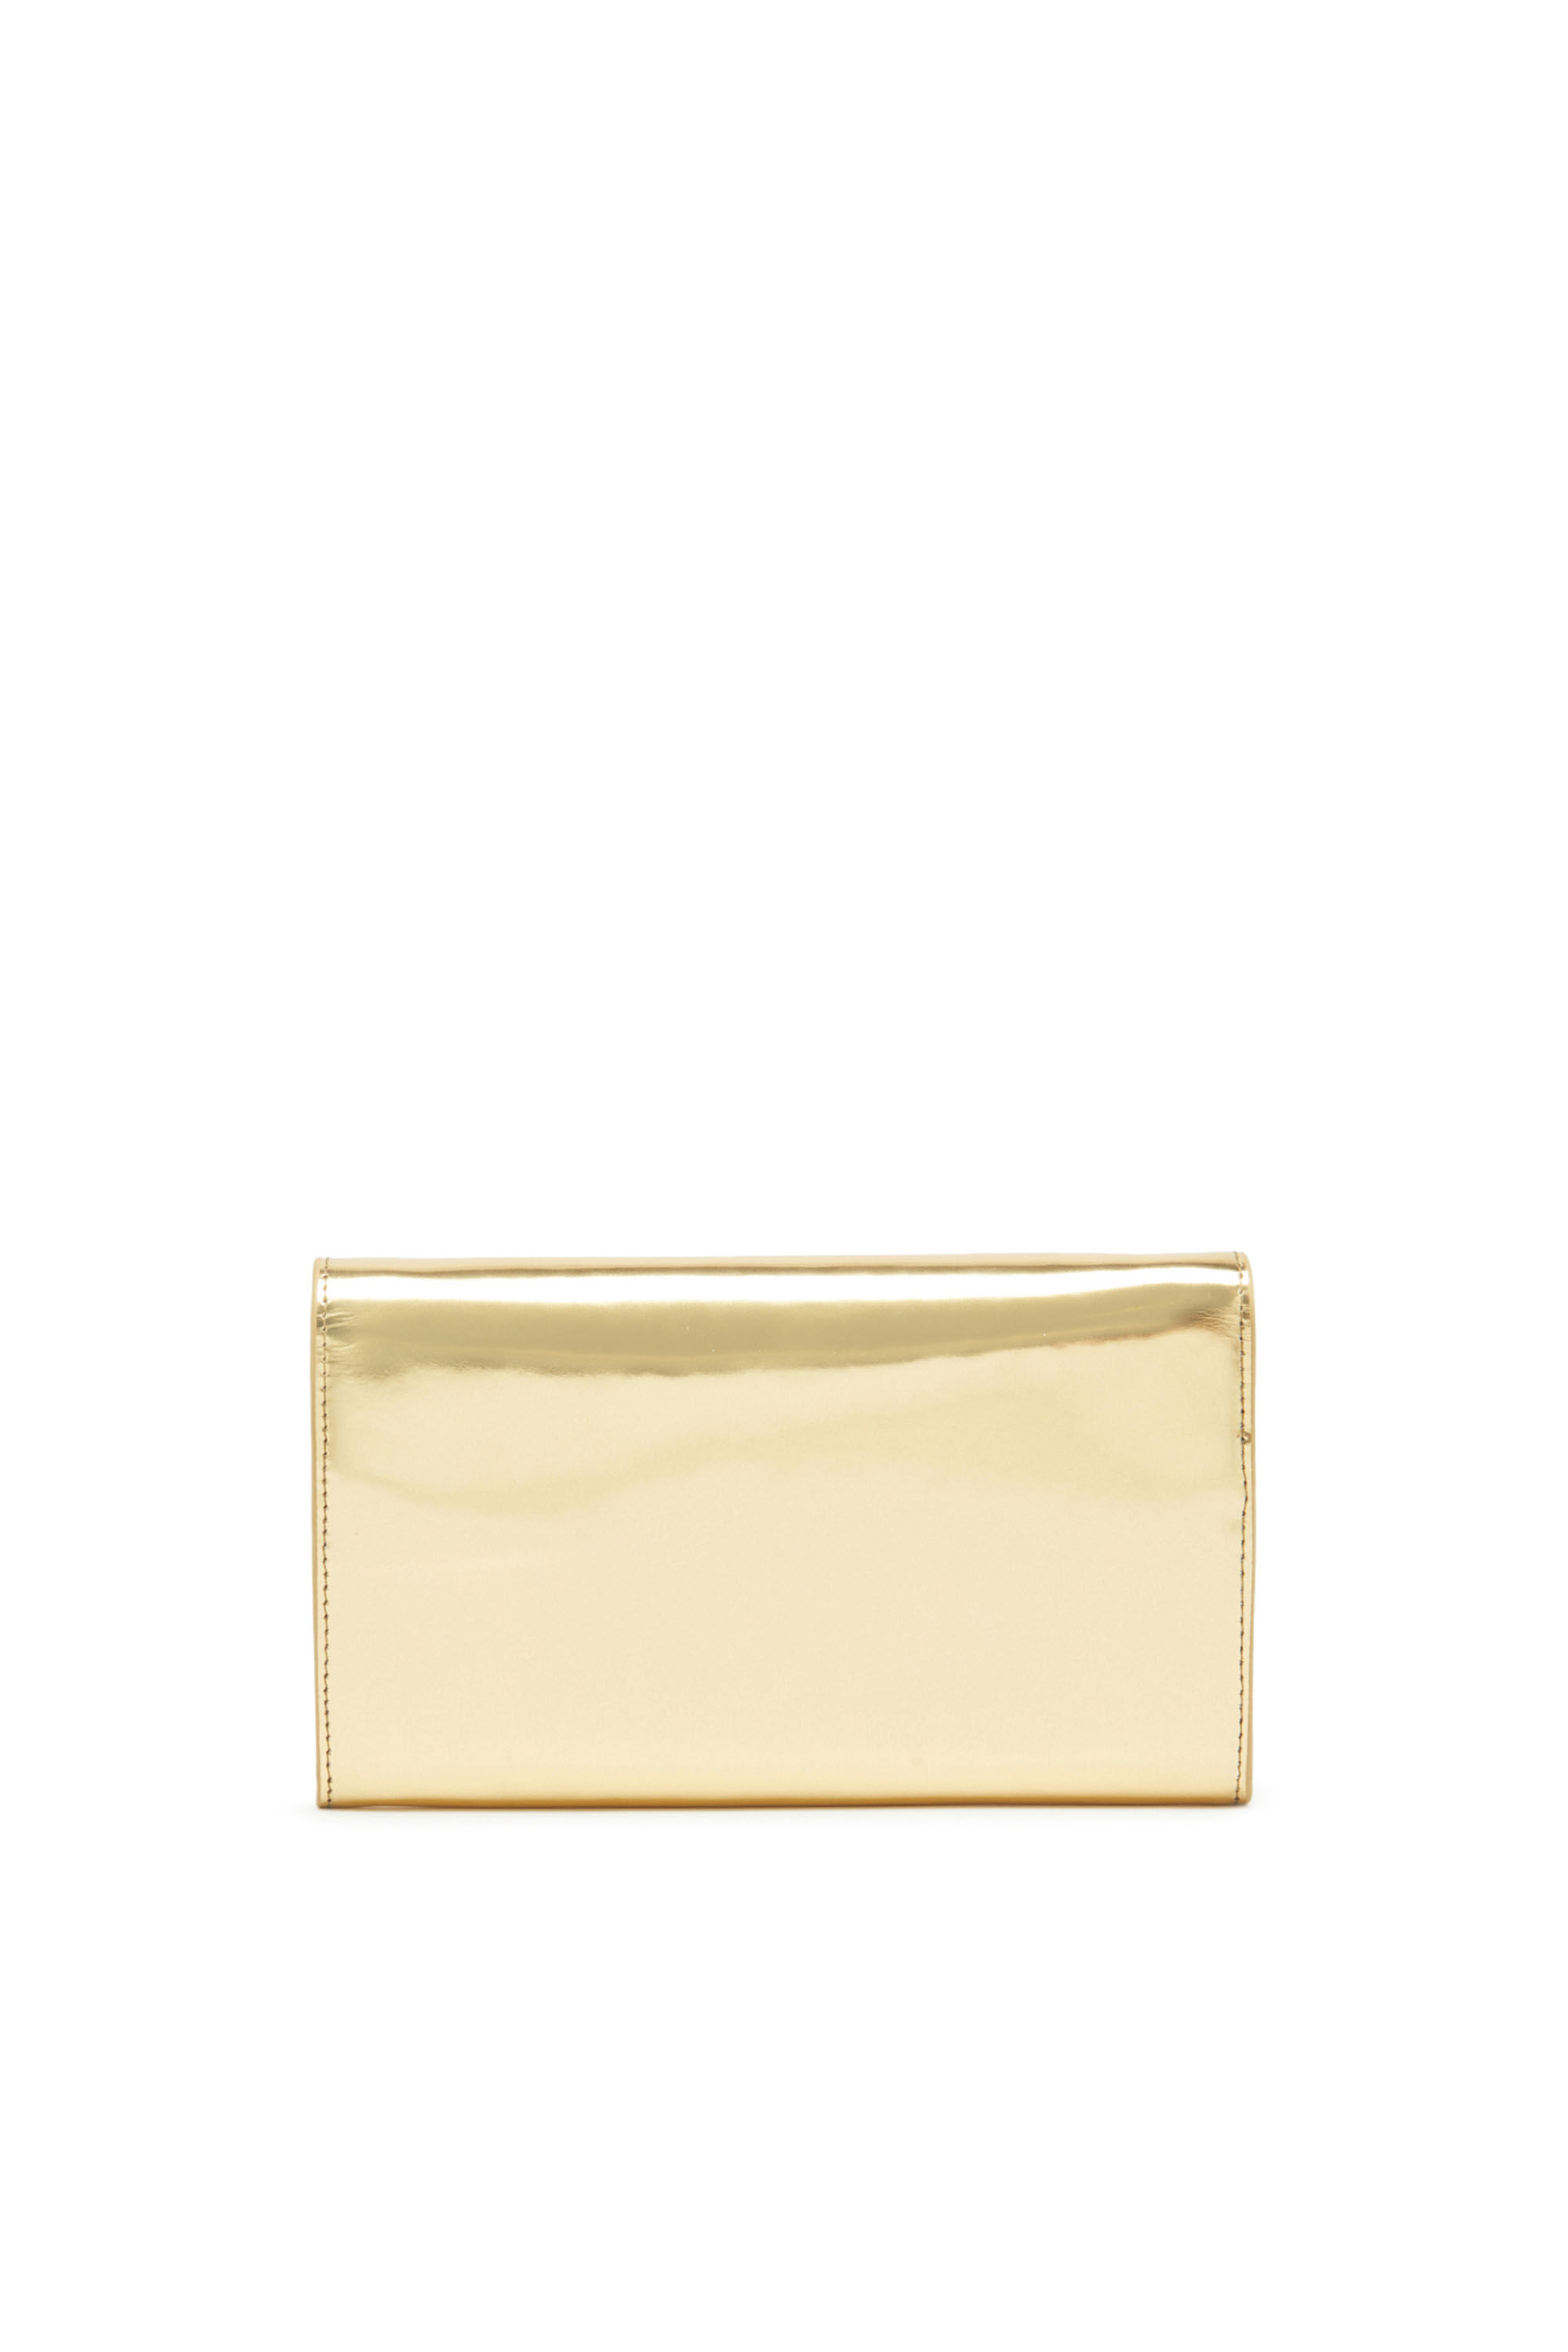 Diesel - LONG WALLET ZIP XXL, Woman Wallet purse in metallic leather in Oro - Image 2